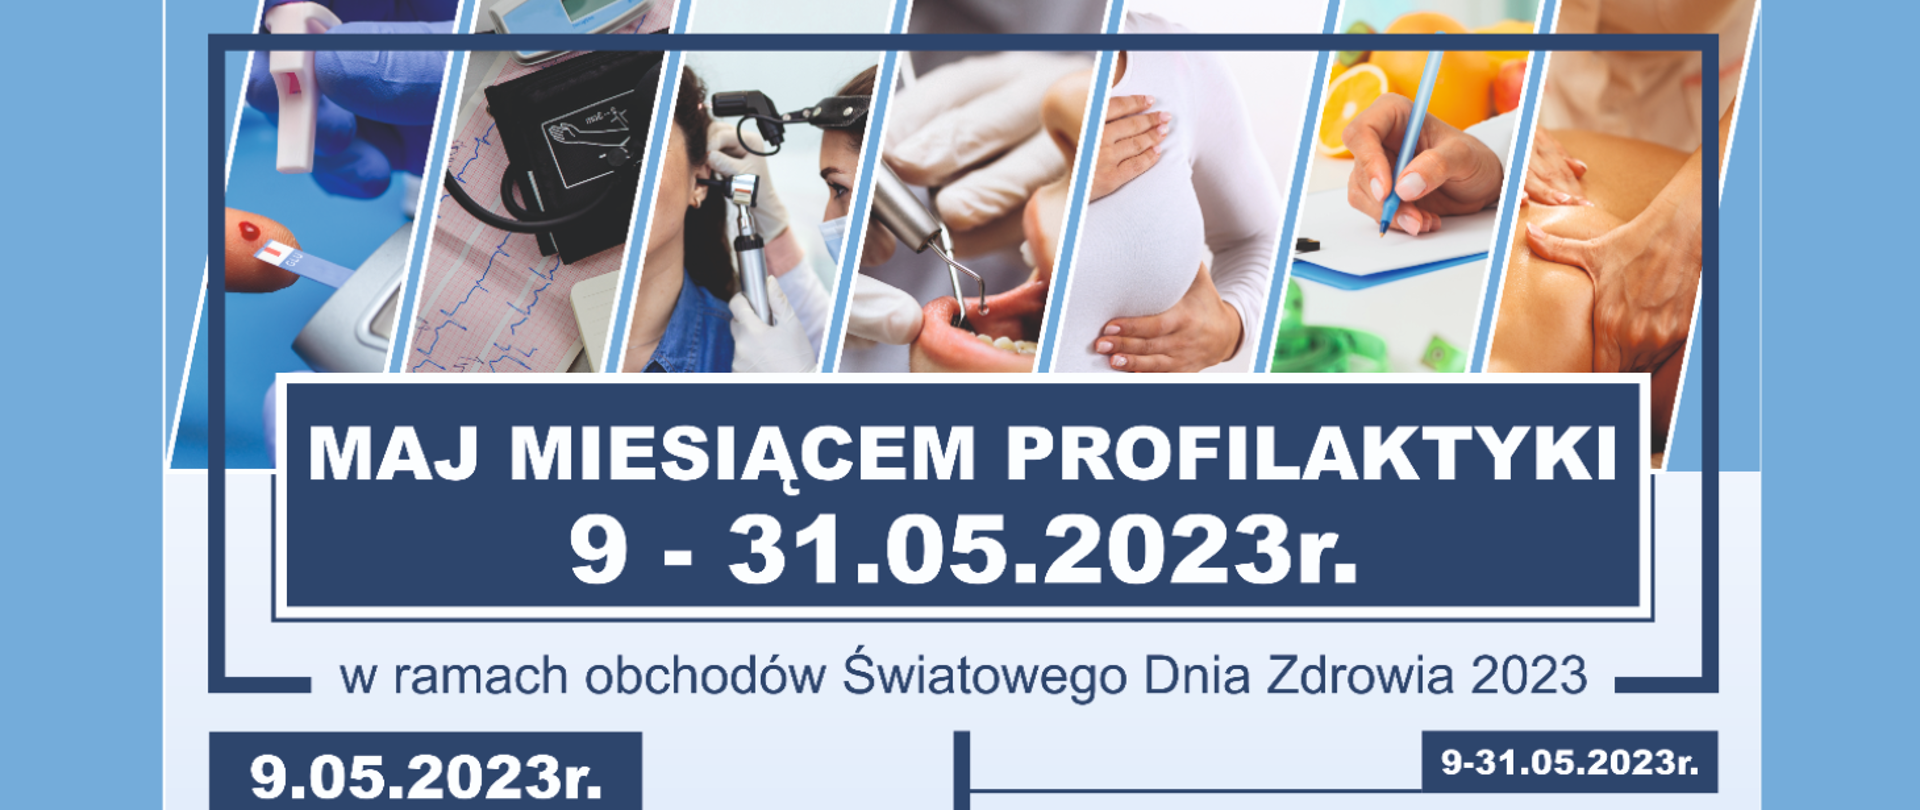 Maj miesiącem profilaktyki w Brodnicy 9-31.05.2023 w ramach obchodów Światowego Dnia Zdrowia 2023